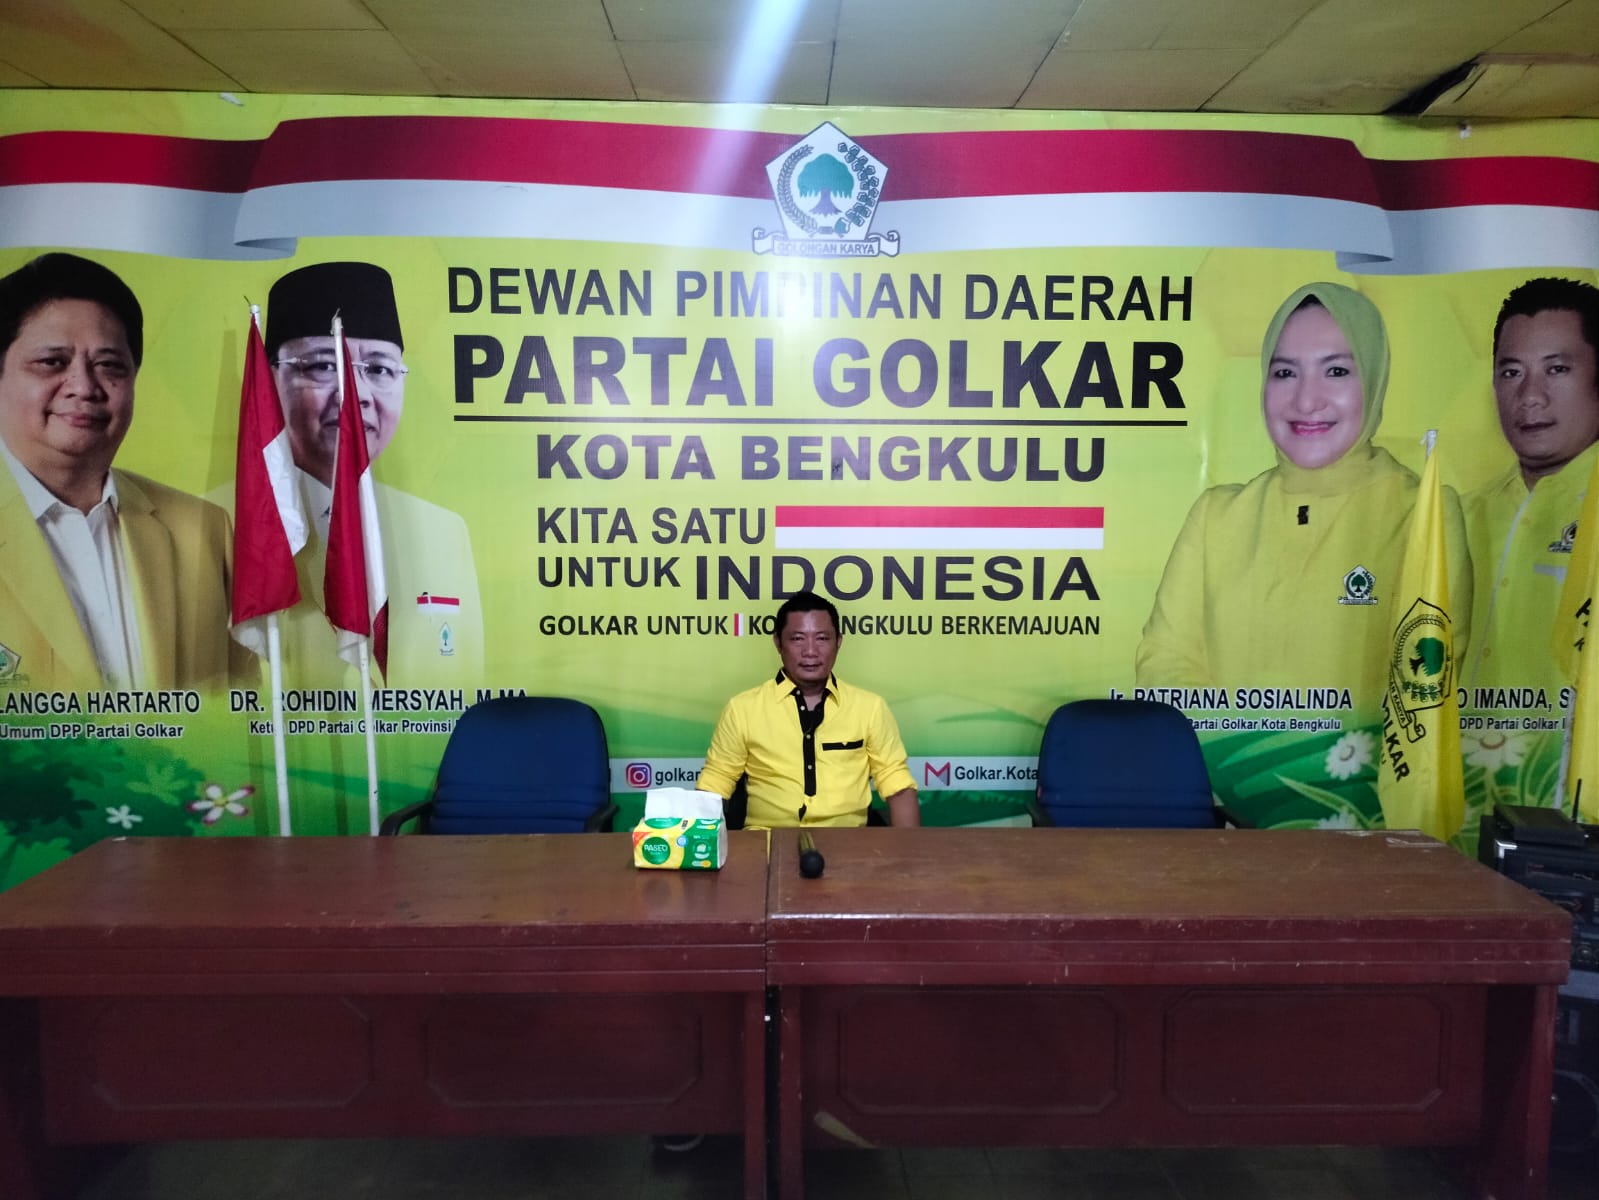 Calon Walikota Bengkulu yang Diusung Partai Golkar Mengerucut ke 3 Nama Ini